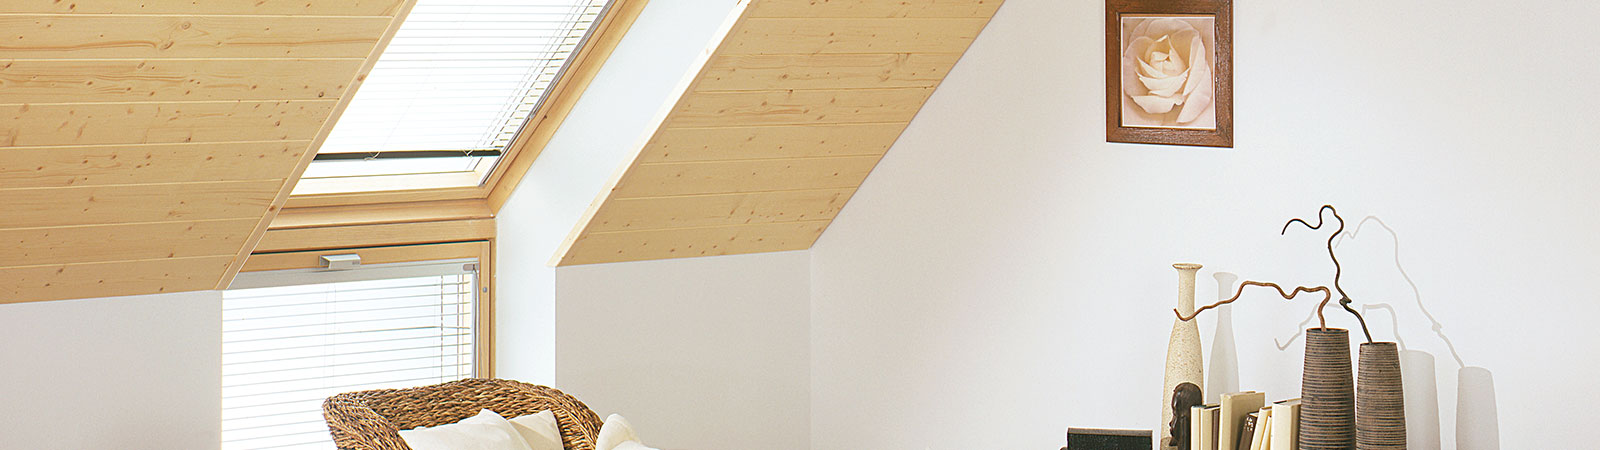 Osmo Anstrich und Pflege für das Fenster aus Holz innen im Wohnbereich